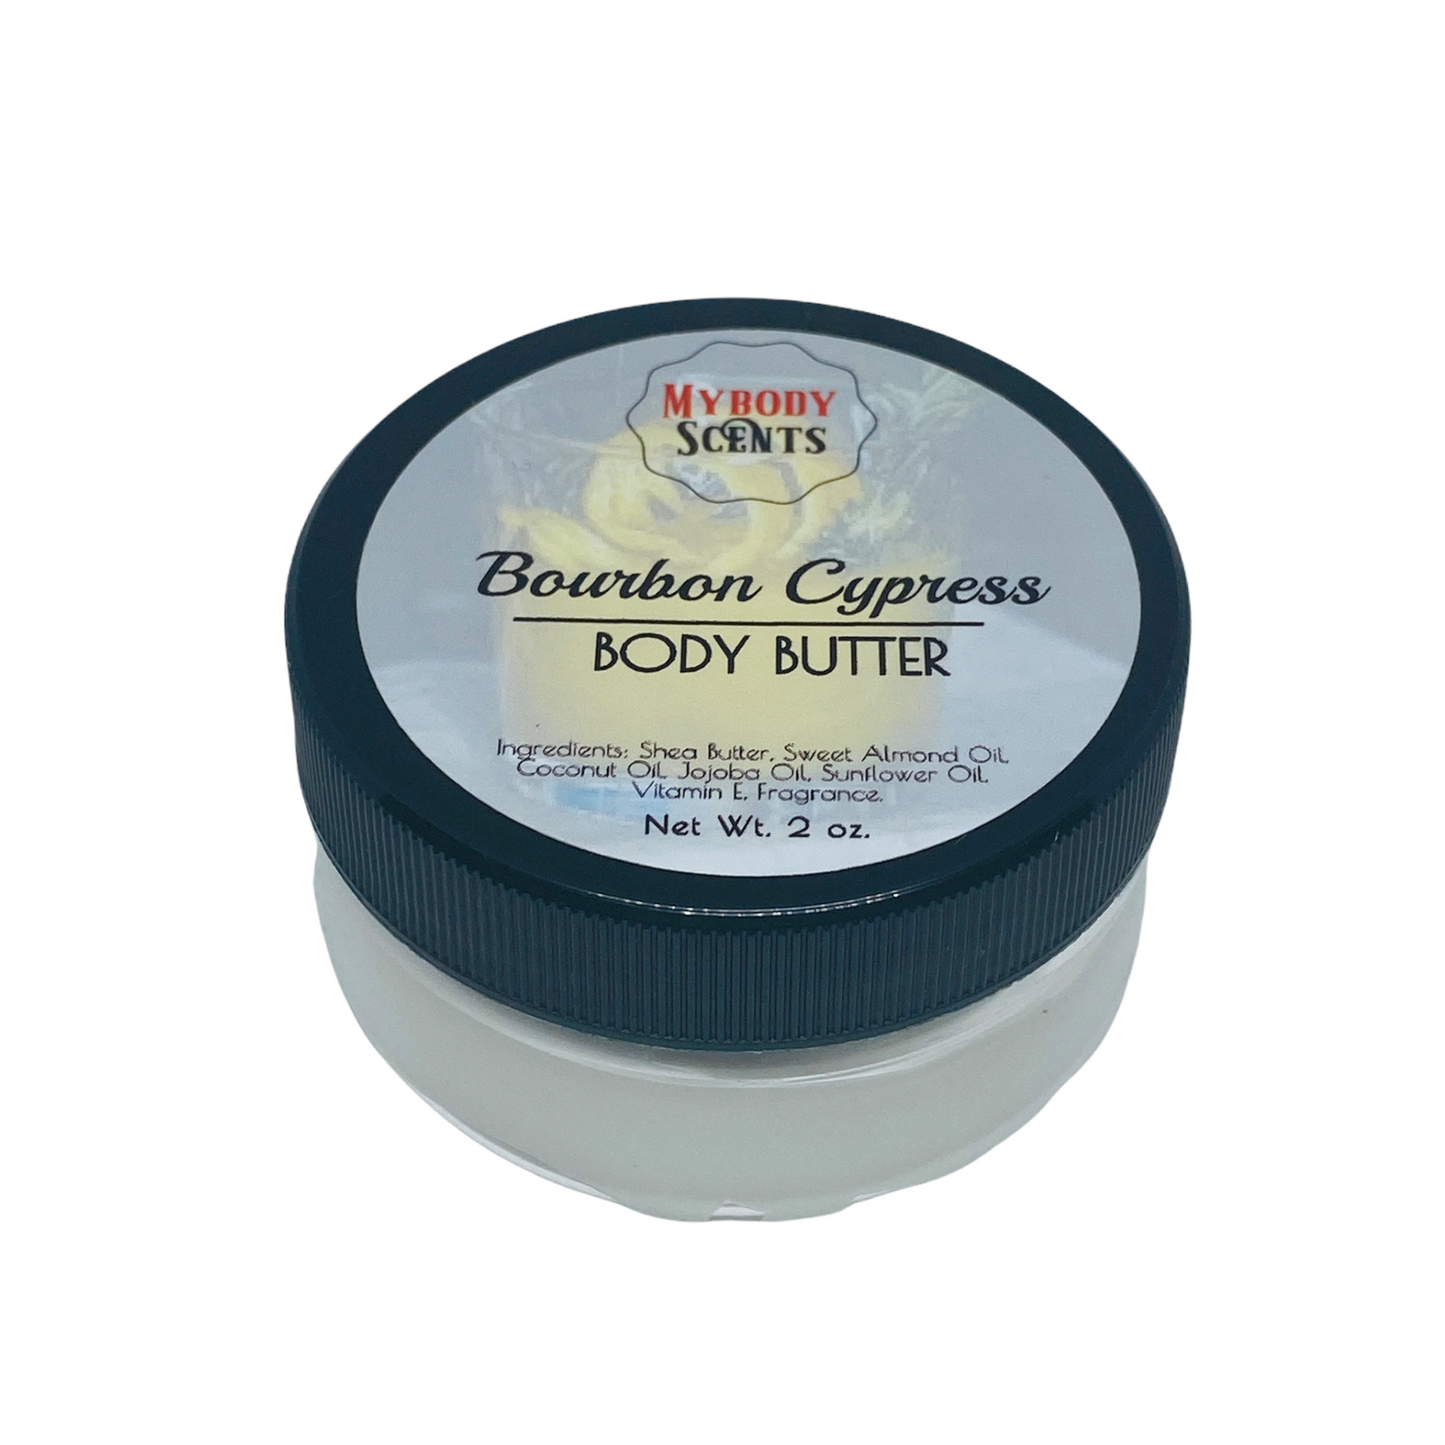 Bourbon Cypress Body Butter (M)